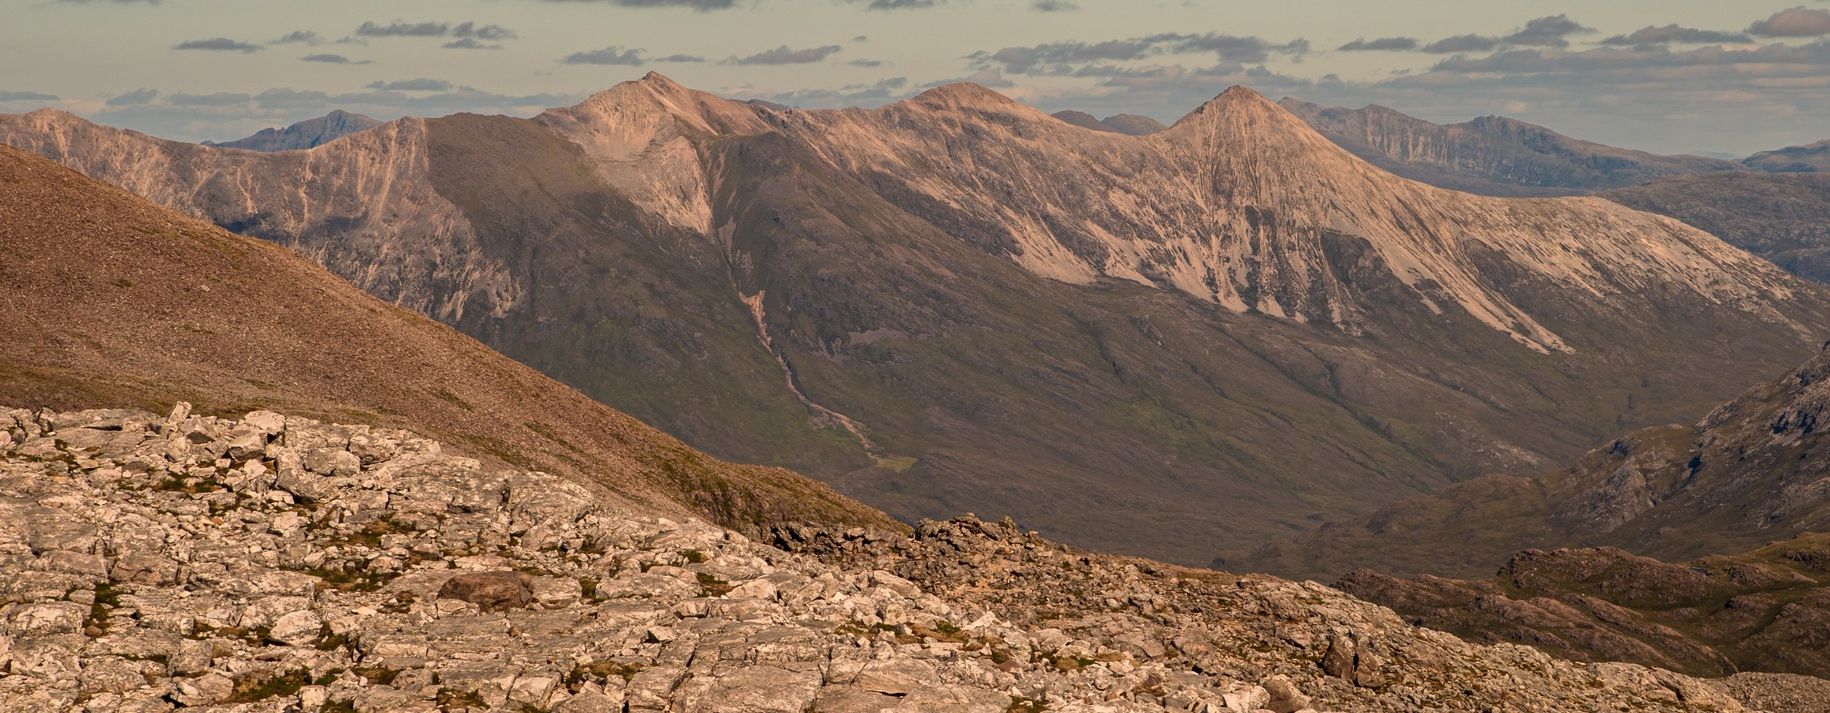 Beinn Eighe summit ridge in Torridon Region of NW Scotland